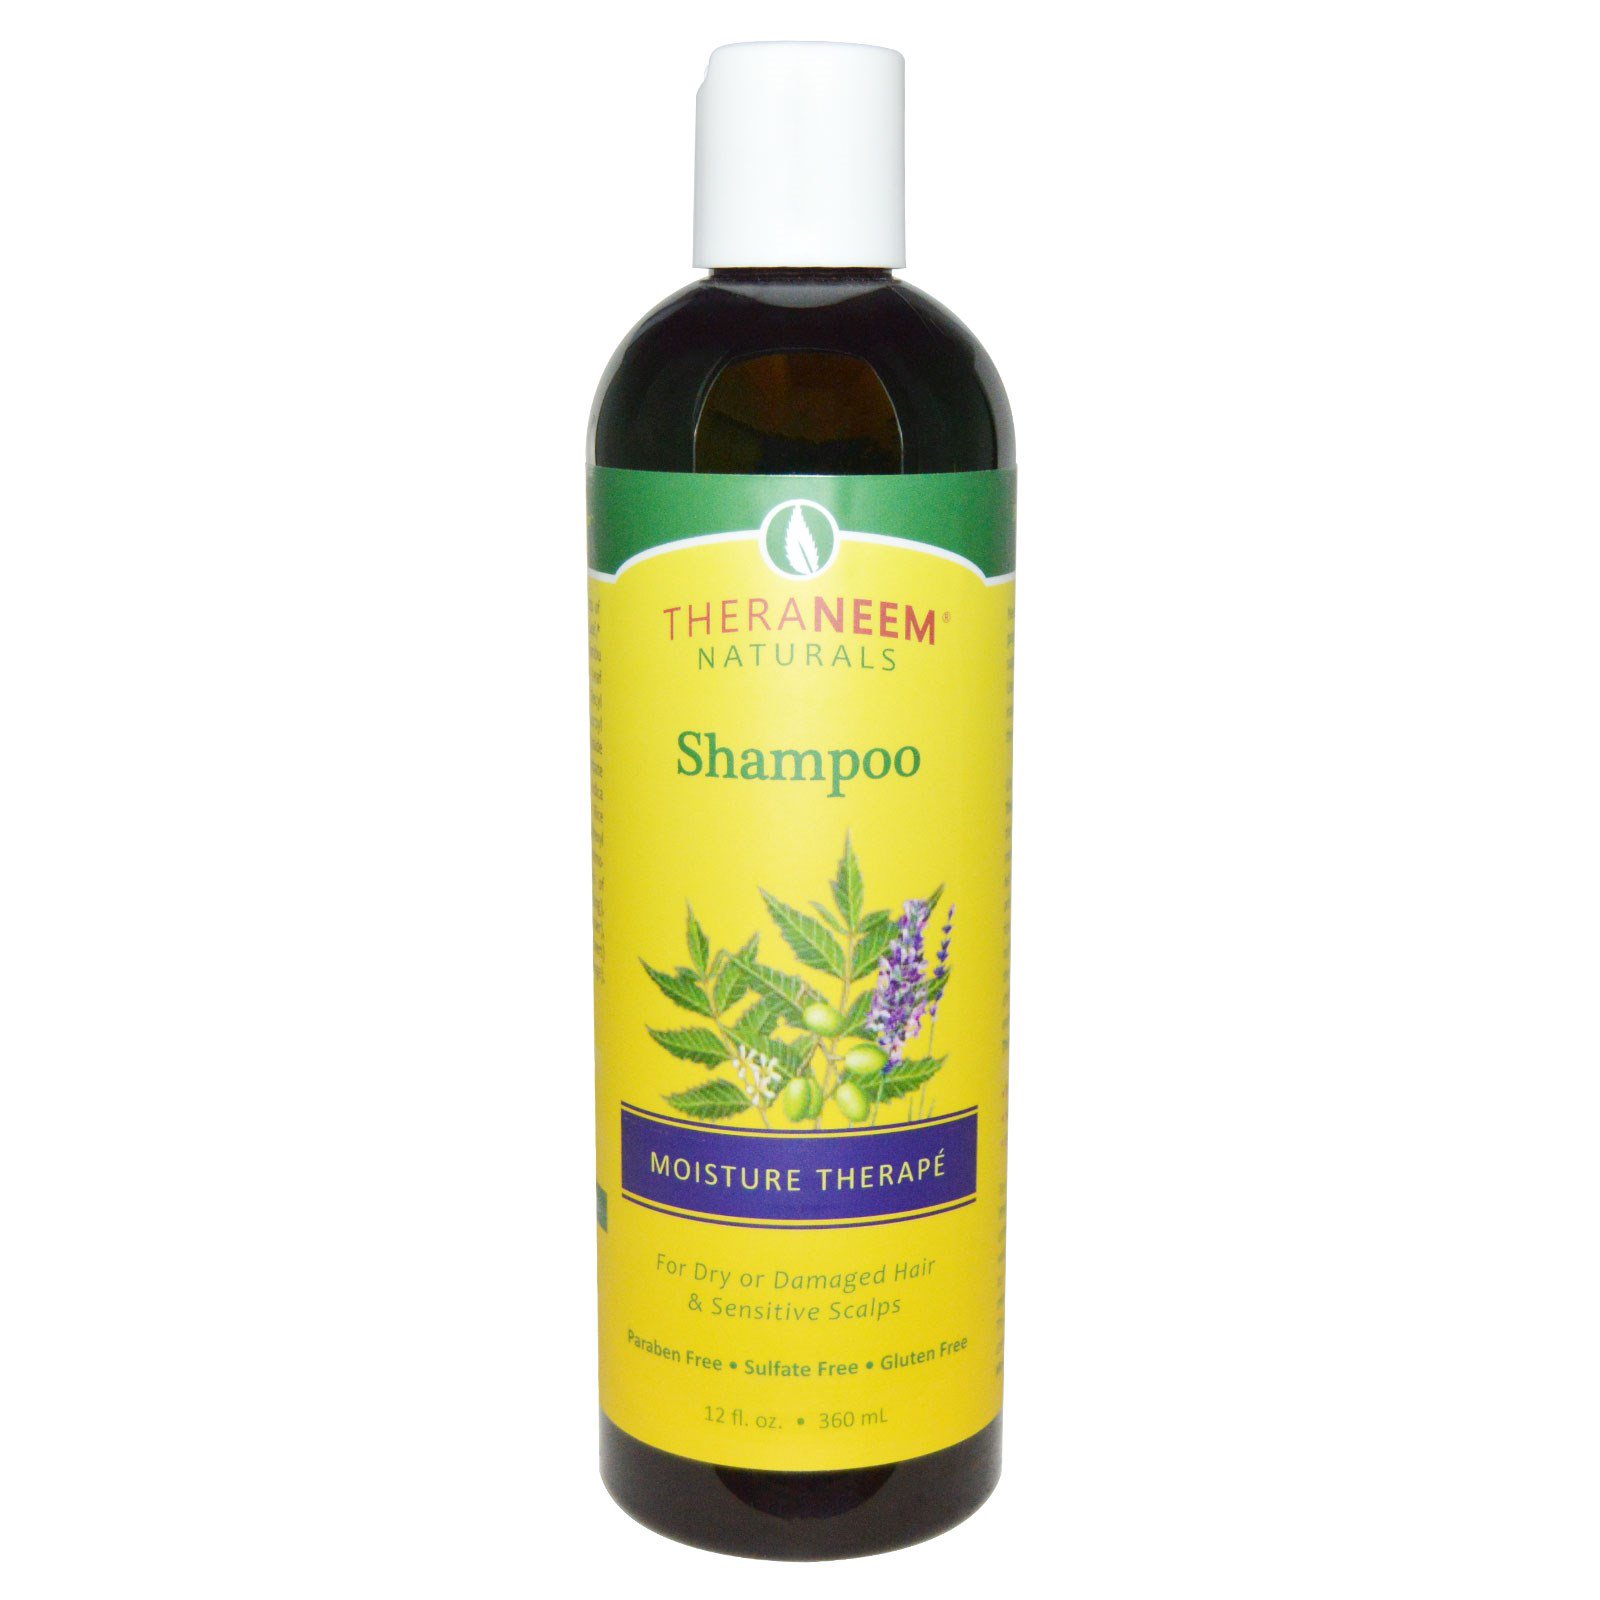 Organix South, TheraNeem Organix, Shampoo, Moisture Therapé, 12 fl oz (360 ml)